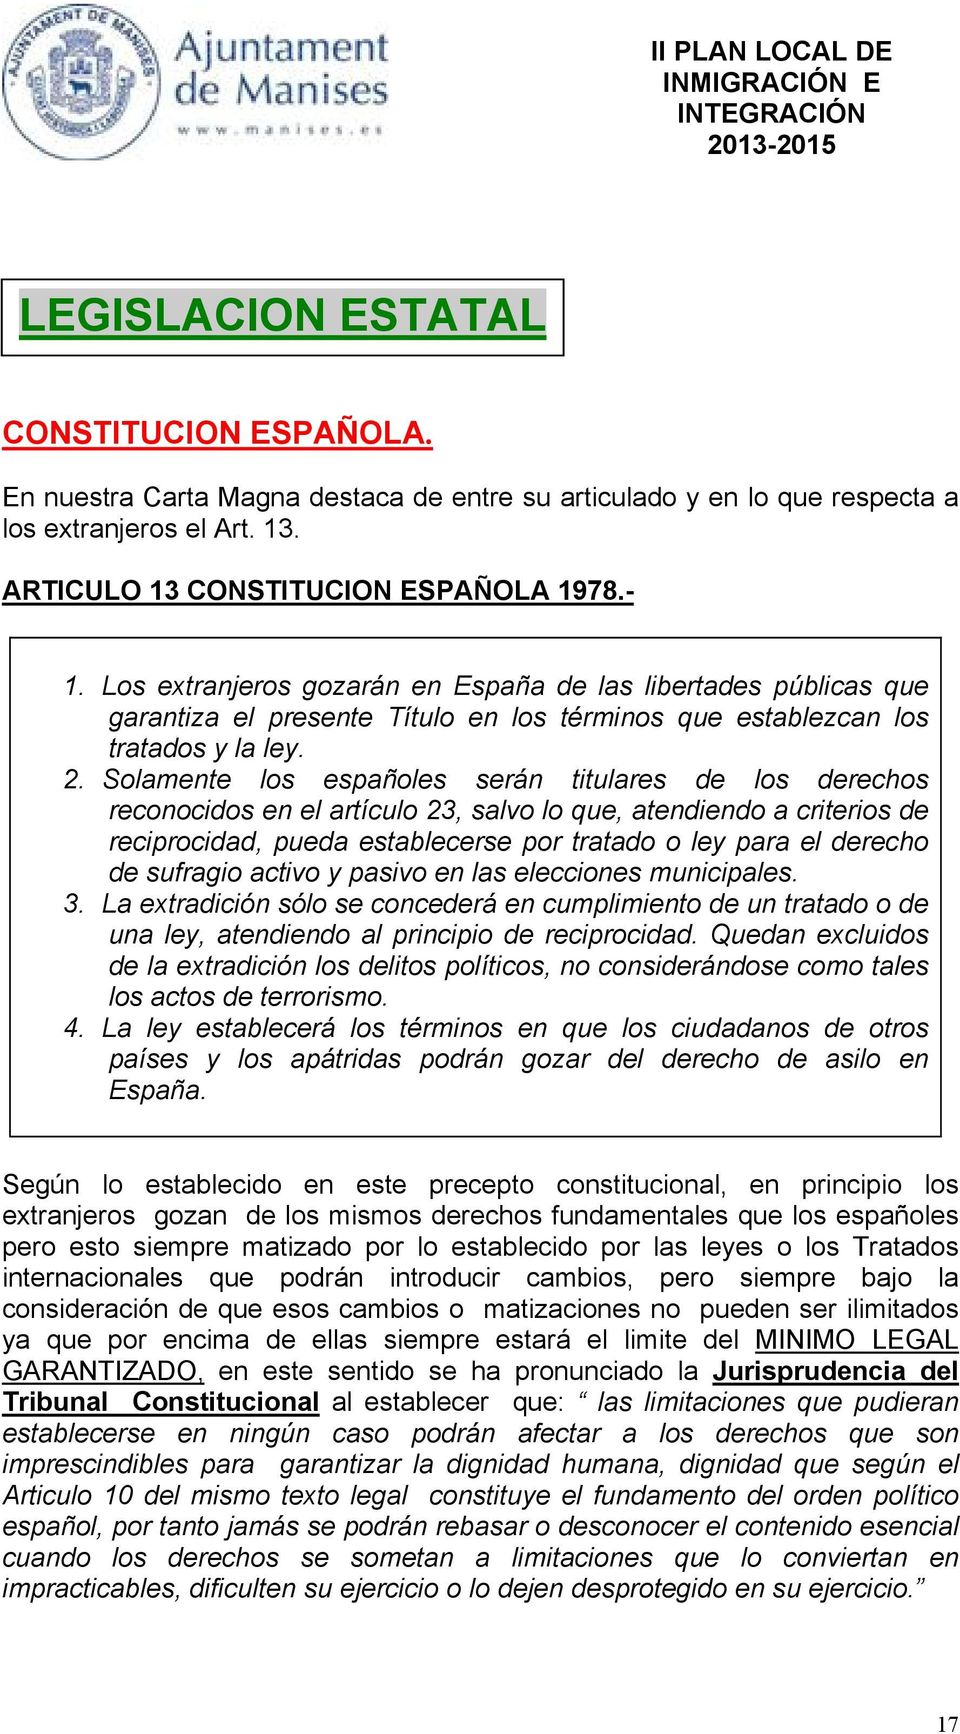 Solamente los españoles serán titulares de los derechos reconocidos en el artículo 23, salvo lo que, atendiendo a criterios de reciprocidad, pueda establecerse por tratado o ley para el derecho de